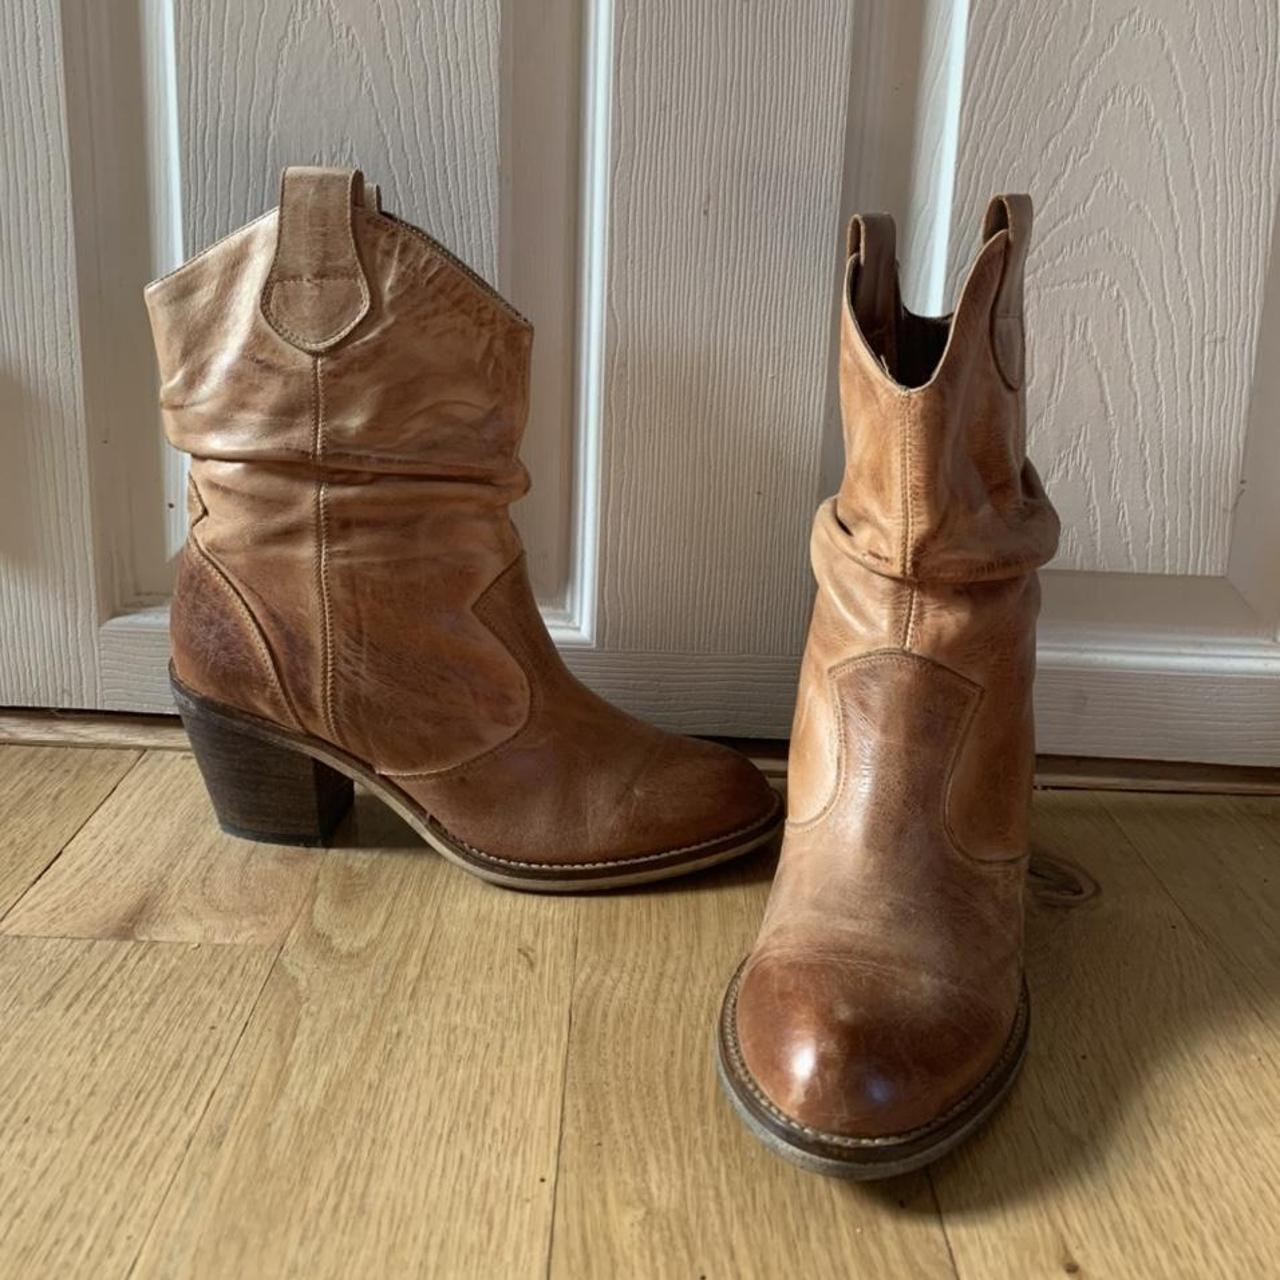 🚨 ALDO 🚨 cowboy boots! 🤠 Size 8 mint condition .:.... - Depop